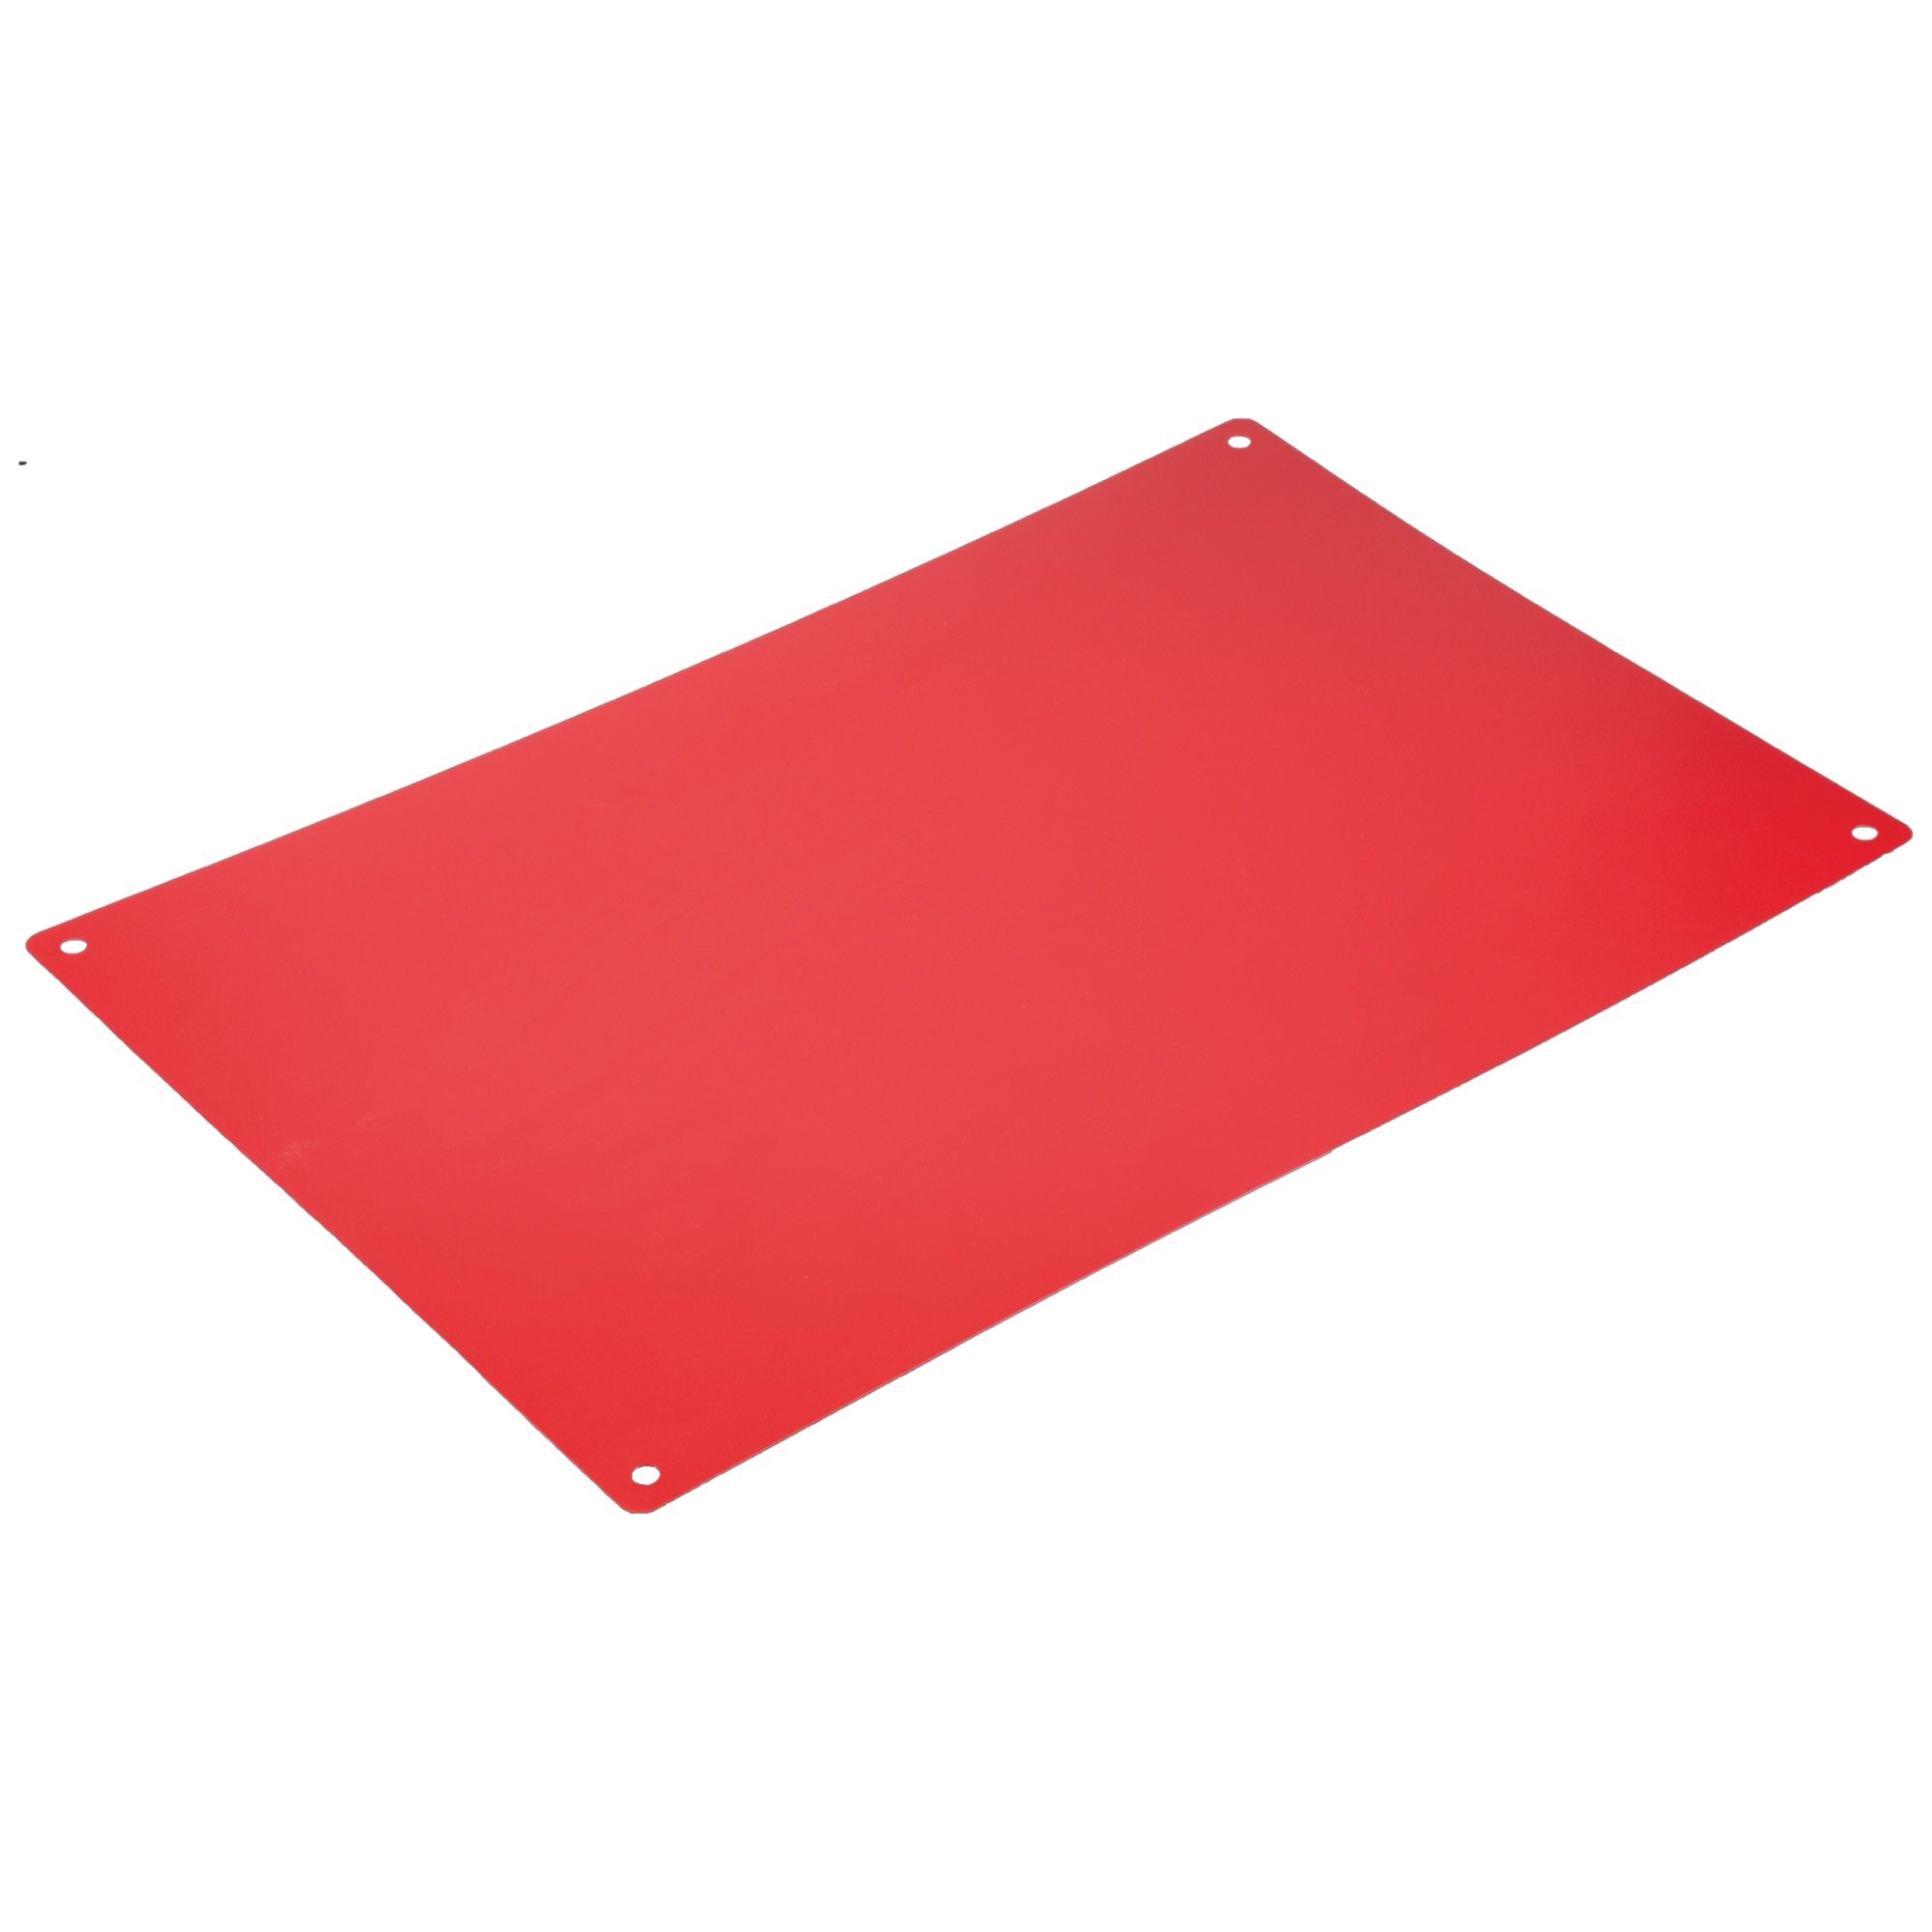 Fólia 40x60 cm červená pre Profboard